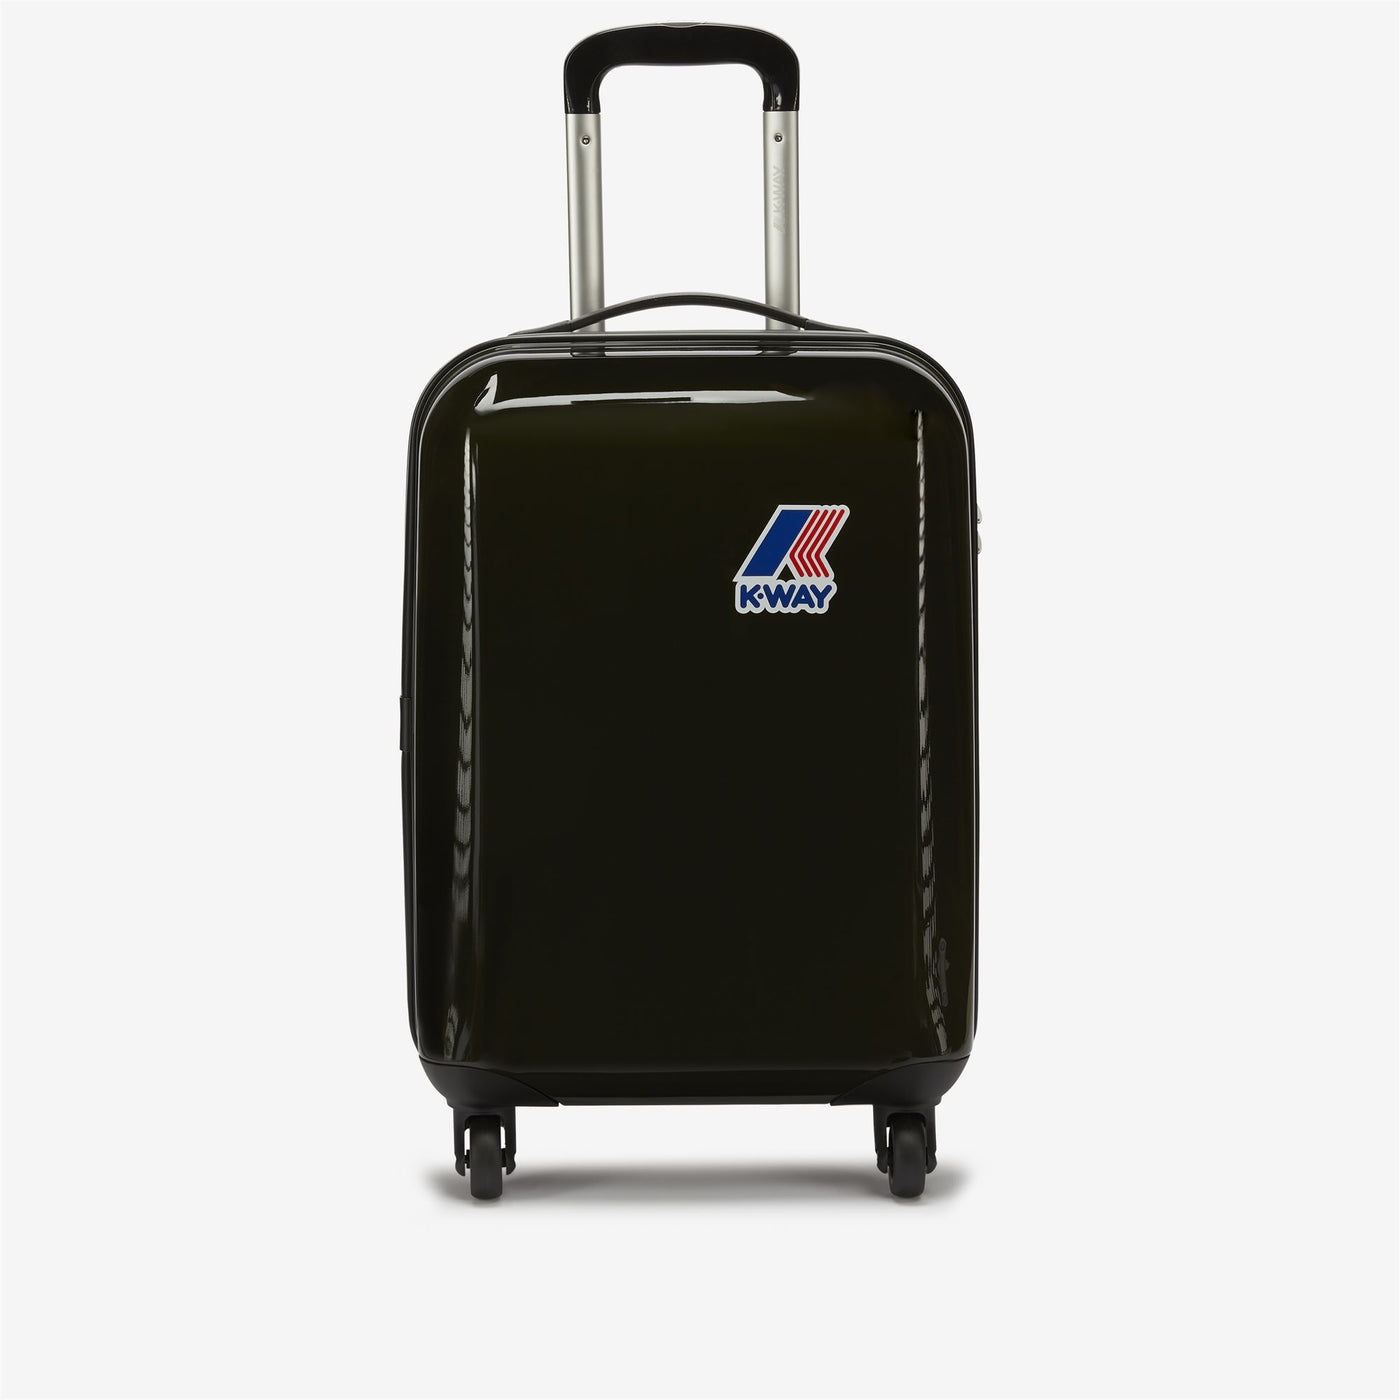 Luggage Bags Unisex K-WAY SYSTEM MINI TROLLEY Trolley BLACK TORBA Photo (jpg Rgb)			